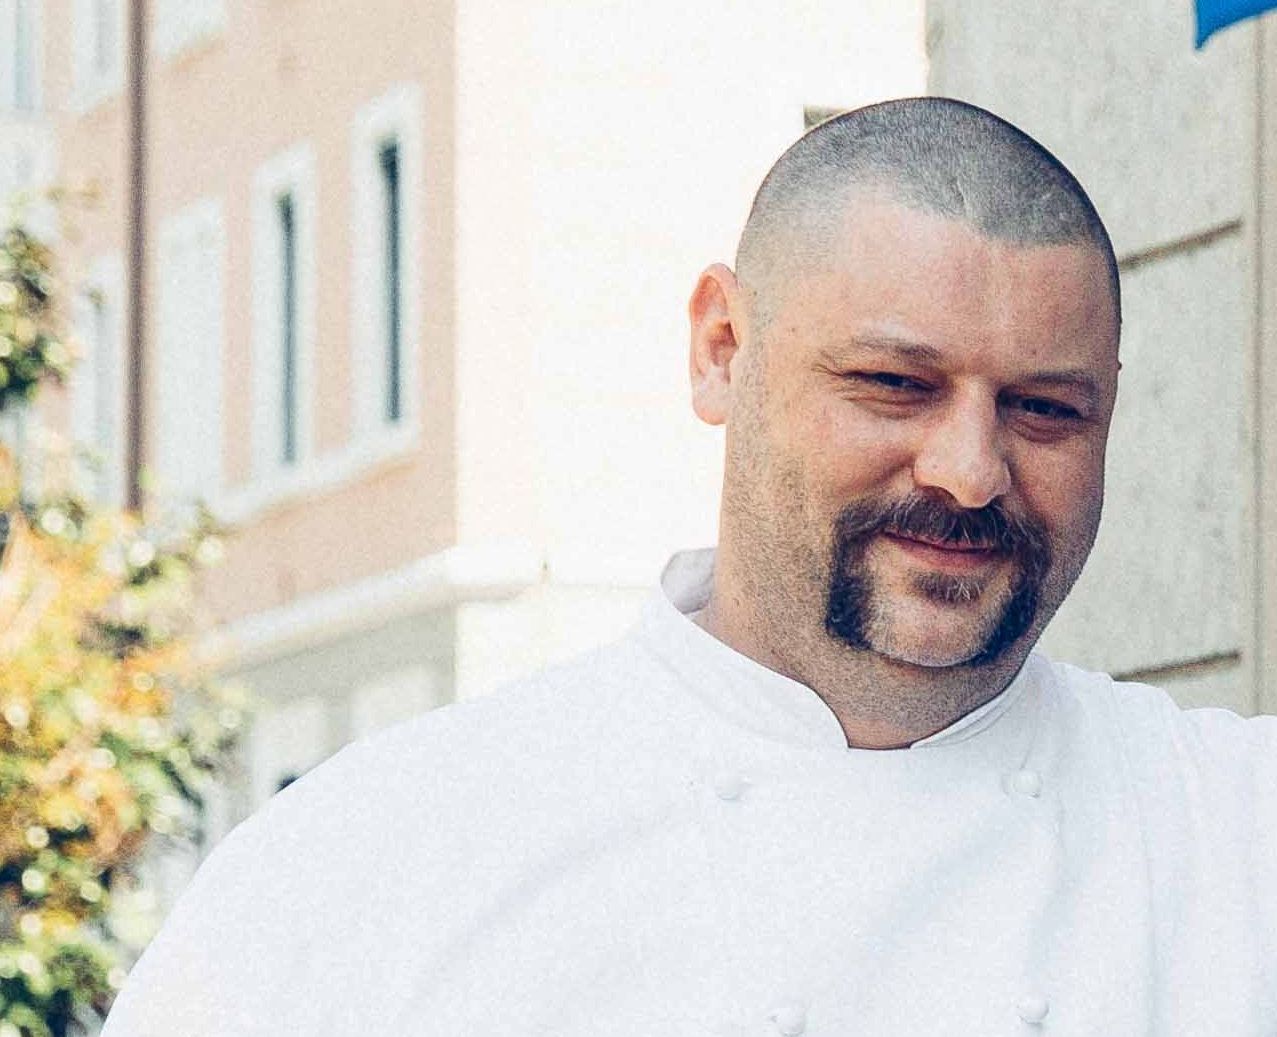 Chef Matteo Fronduti